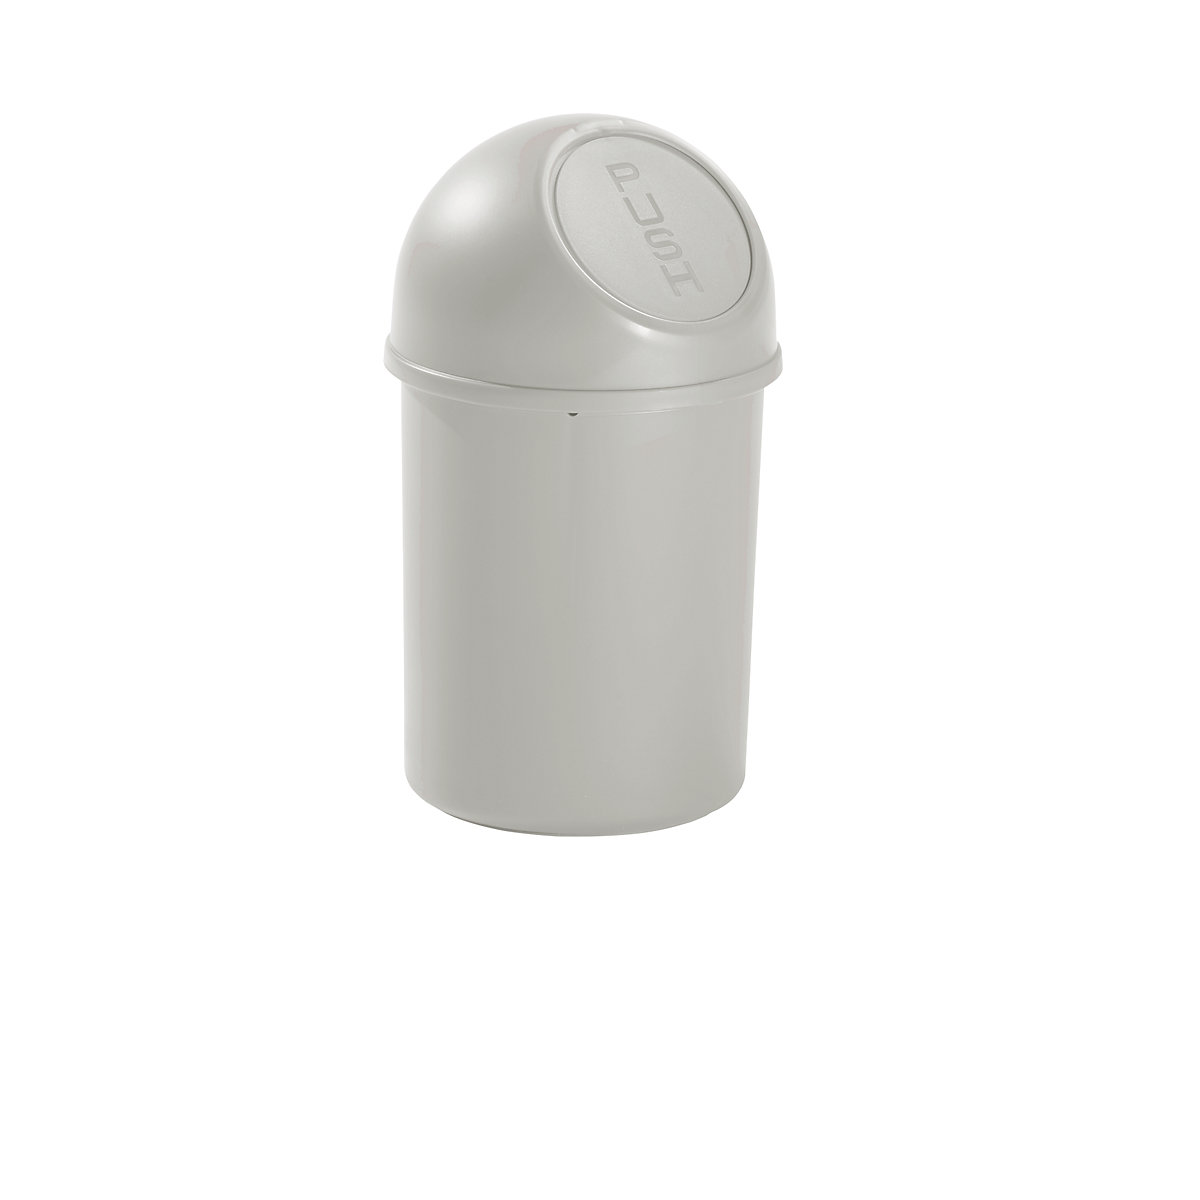 helit – Samozavírací nádoba na odpadky z plastu, objem 6 l, v x Ø 375 x 216 mm, světlá šedá, bal.j. 6 ks